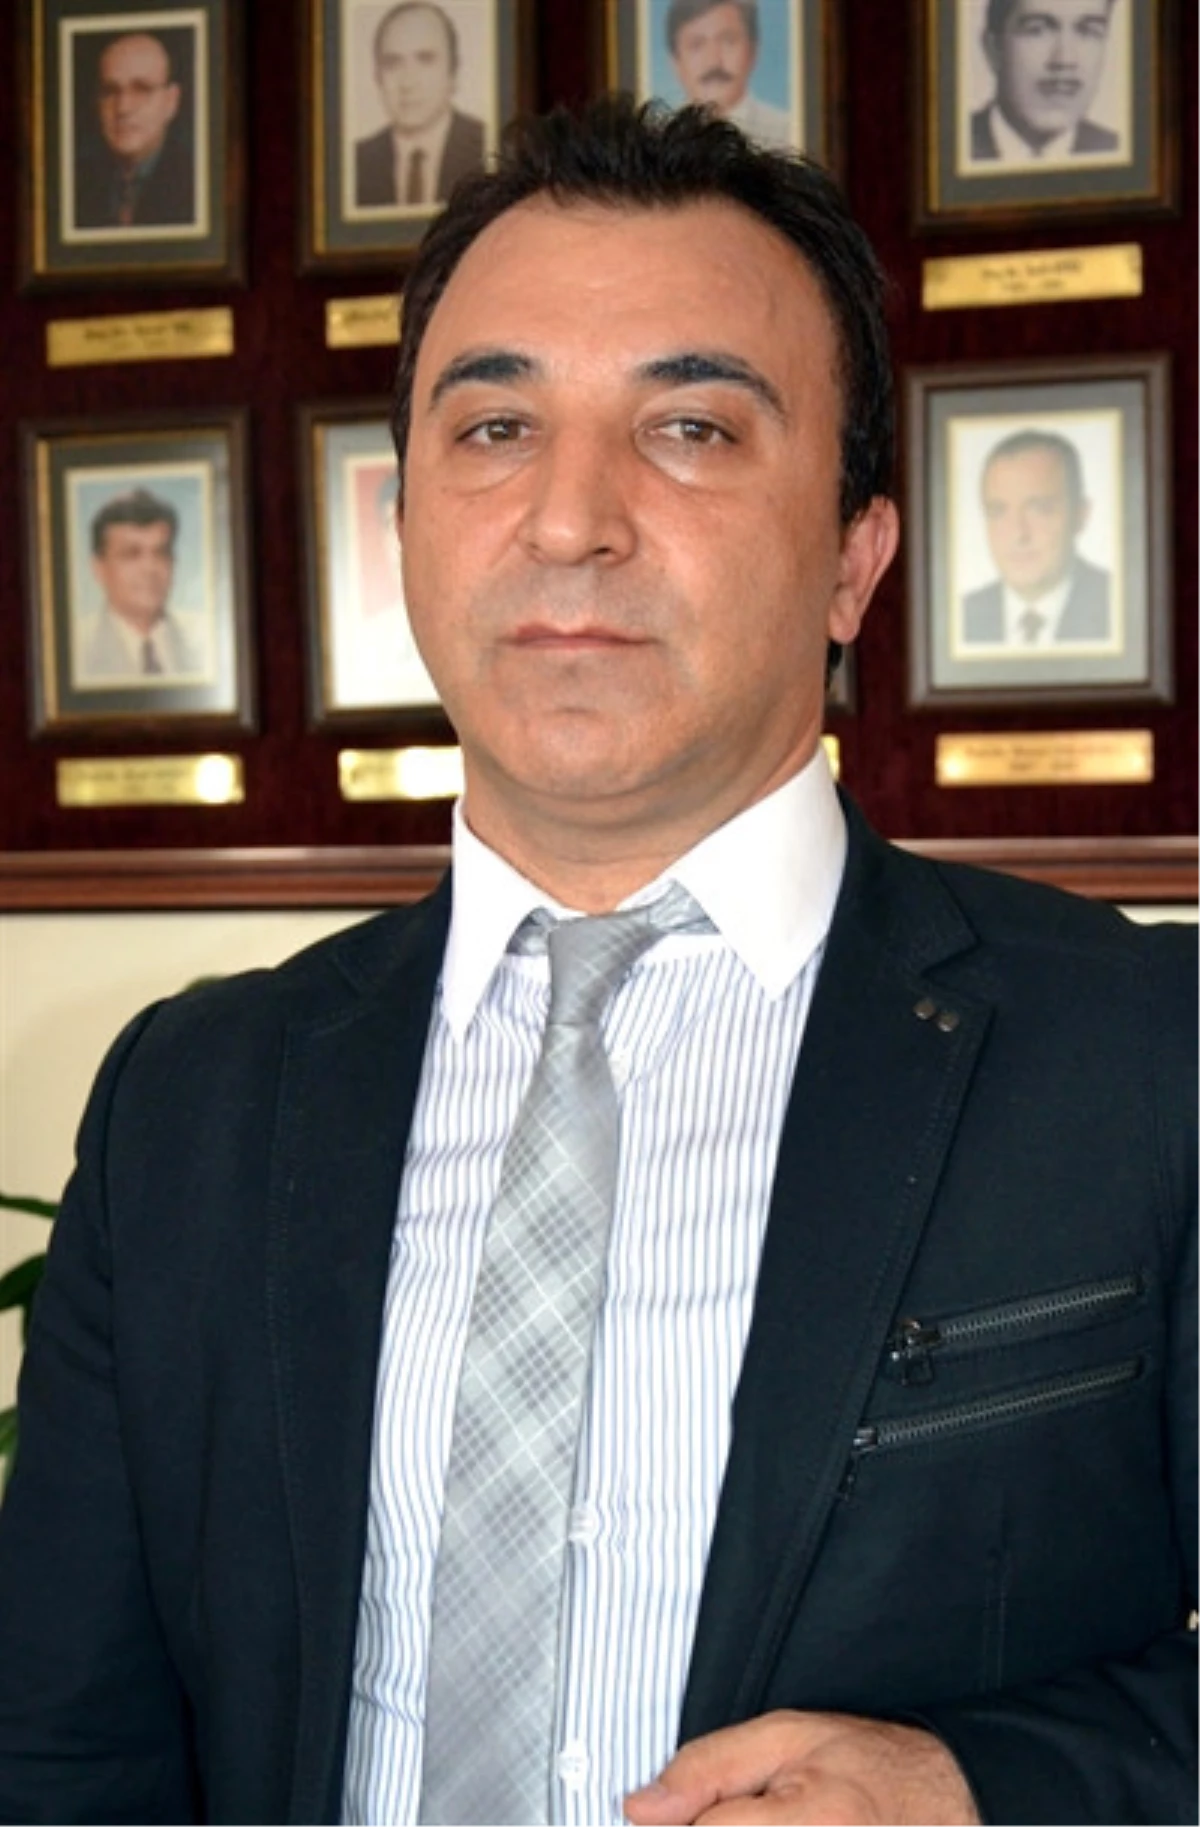 Başhekim Prof. Dr. Sırmagül, Görevine Başladı